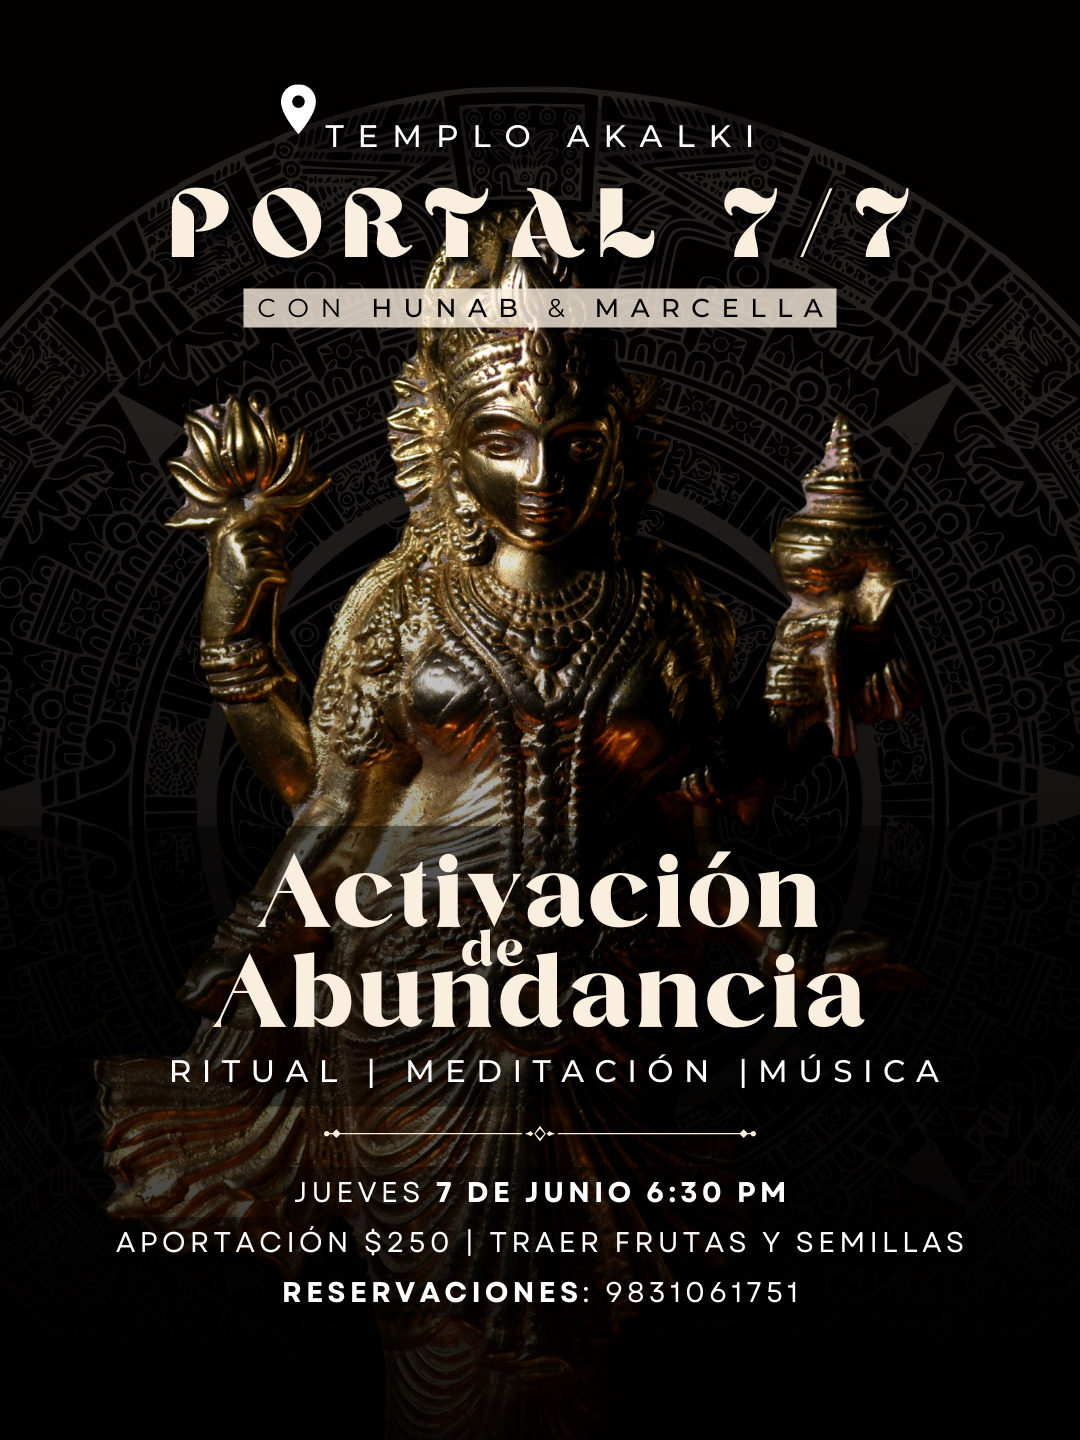 Portal 7/7 - Activación de Abundancia - Akalki